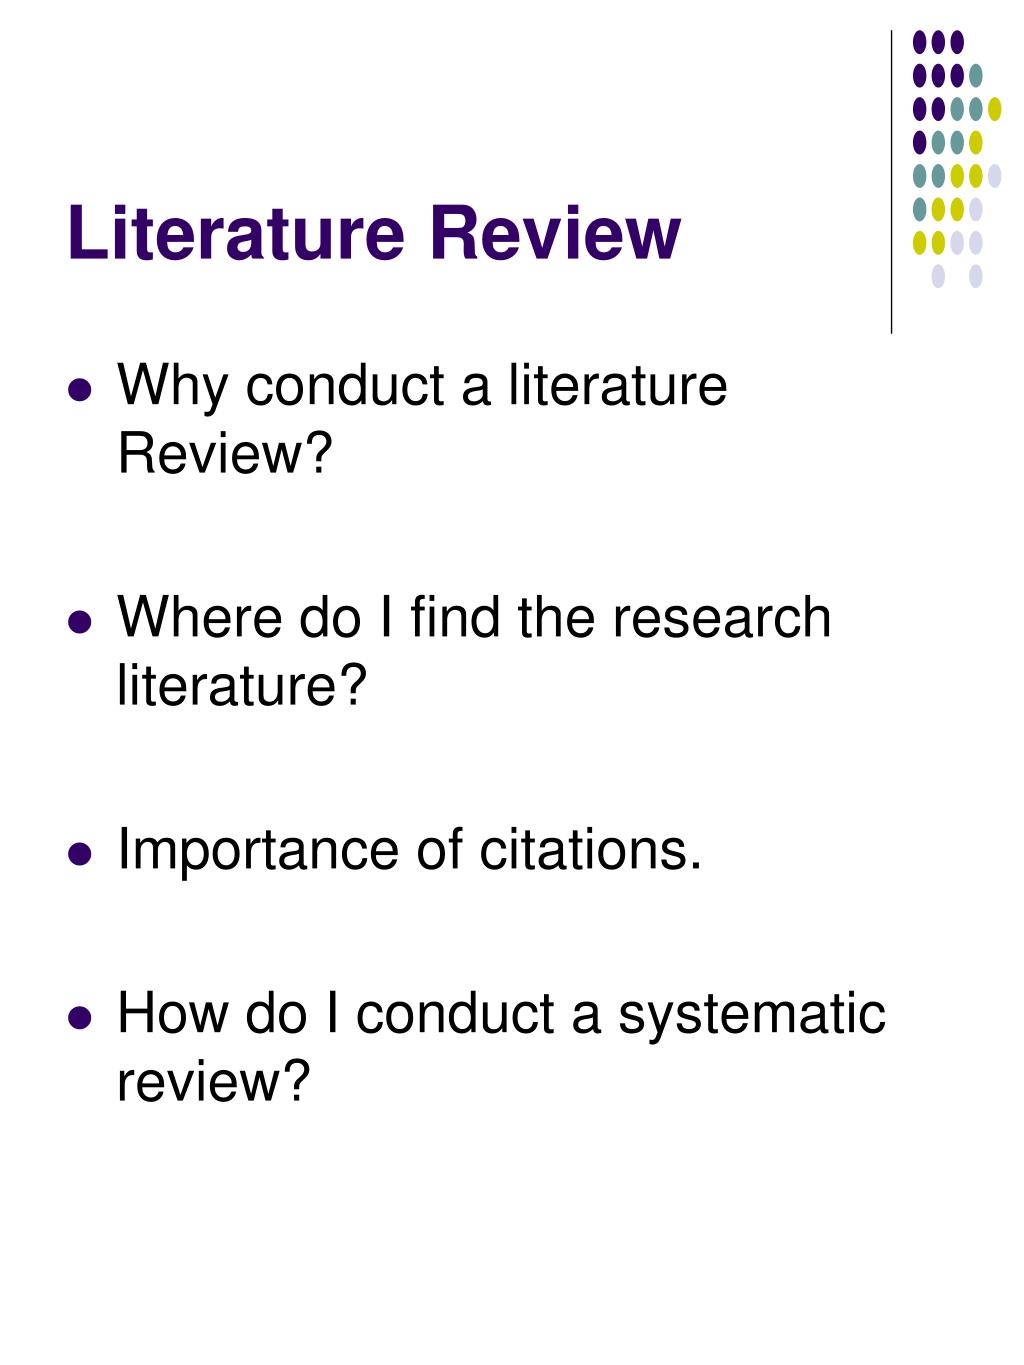 Do critique literature review